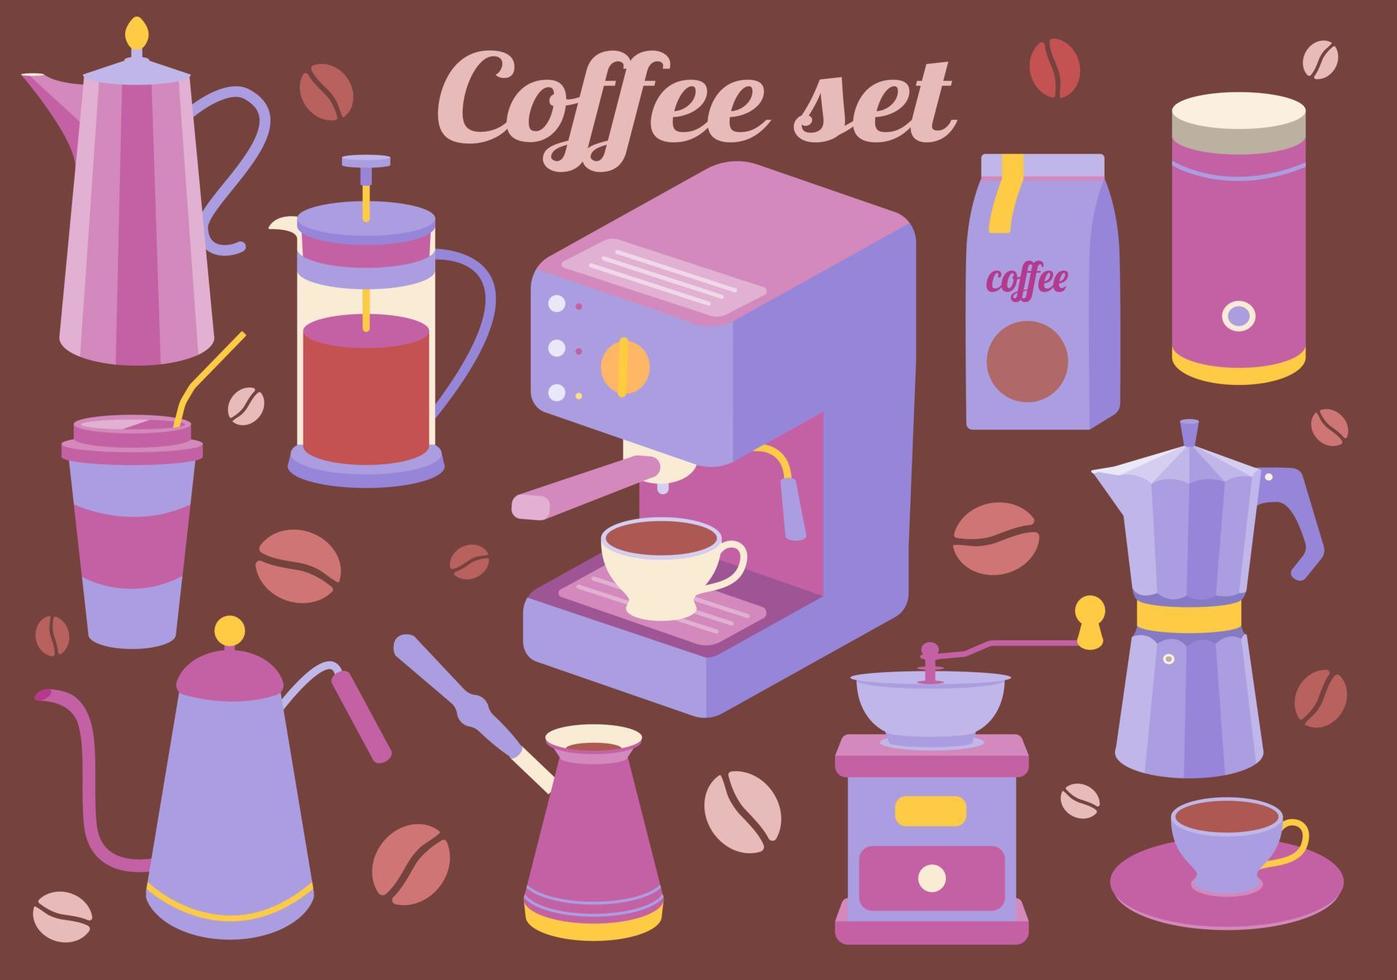 koffieset keukenaccessoires voor het maken van een drankje. maker, franse pers, pot, koffiezetapparaat, molen, granen. vector illustratie